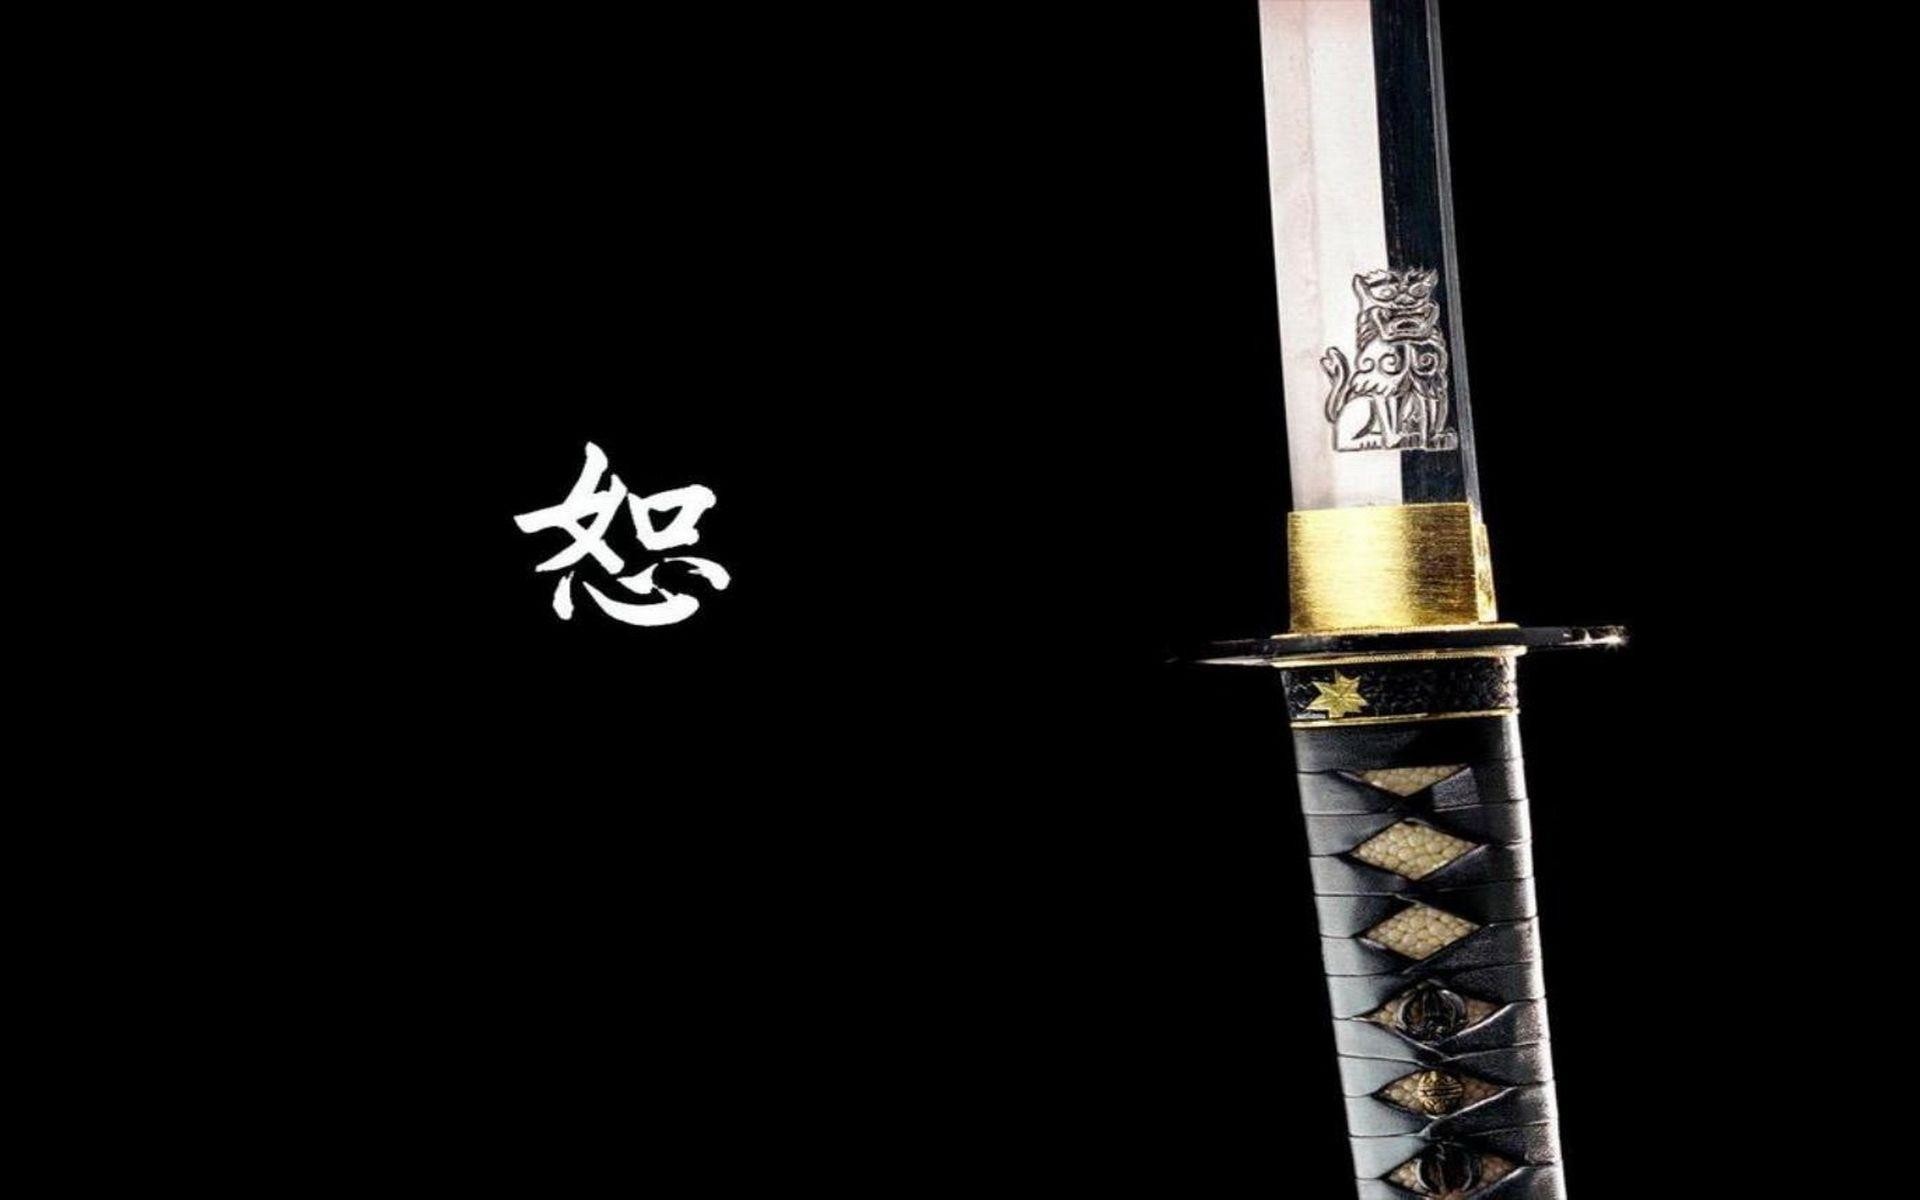 1920x1200 Samurai Sword Wallpaper - WallpaperSafari